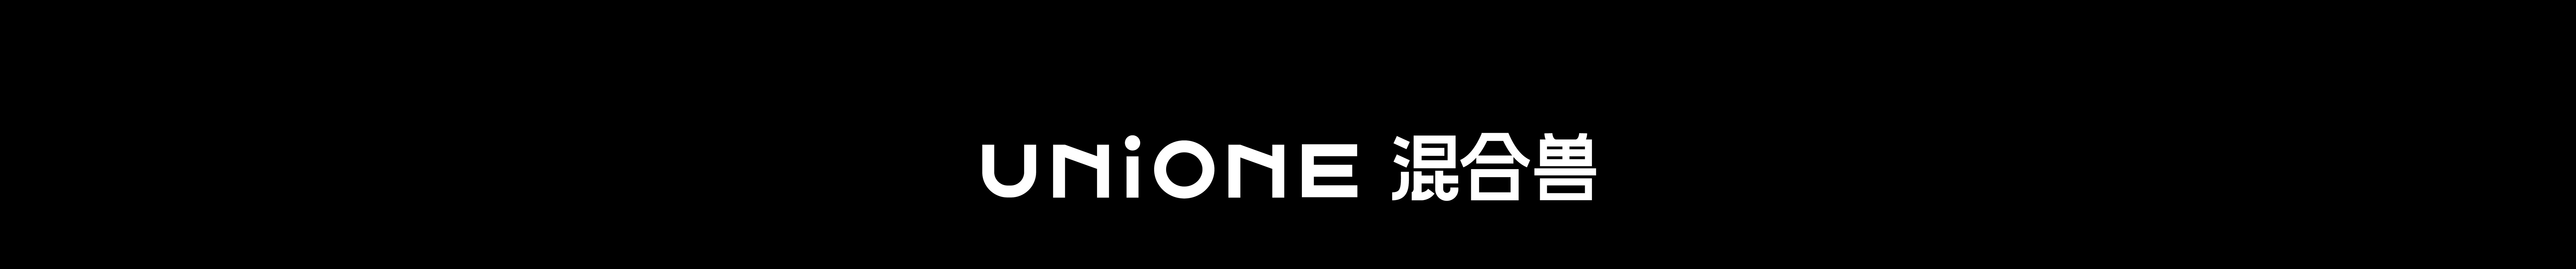 UNIONE 混合兽's profile banner